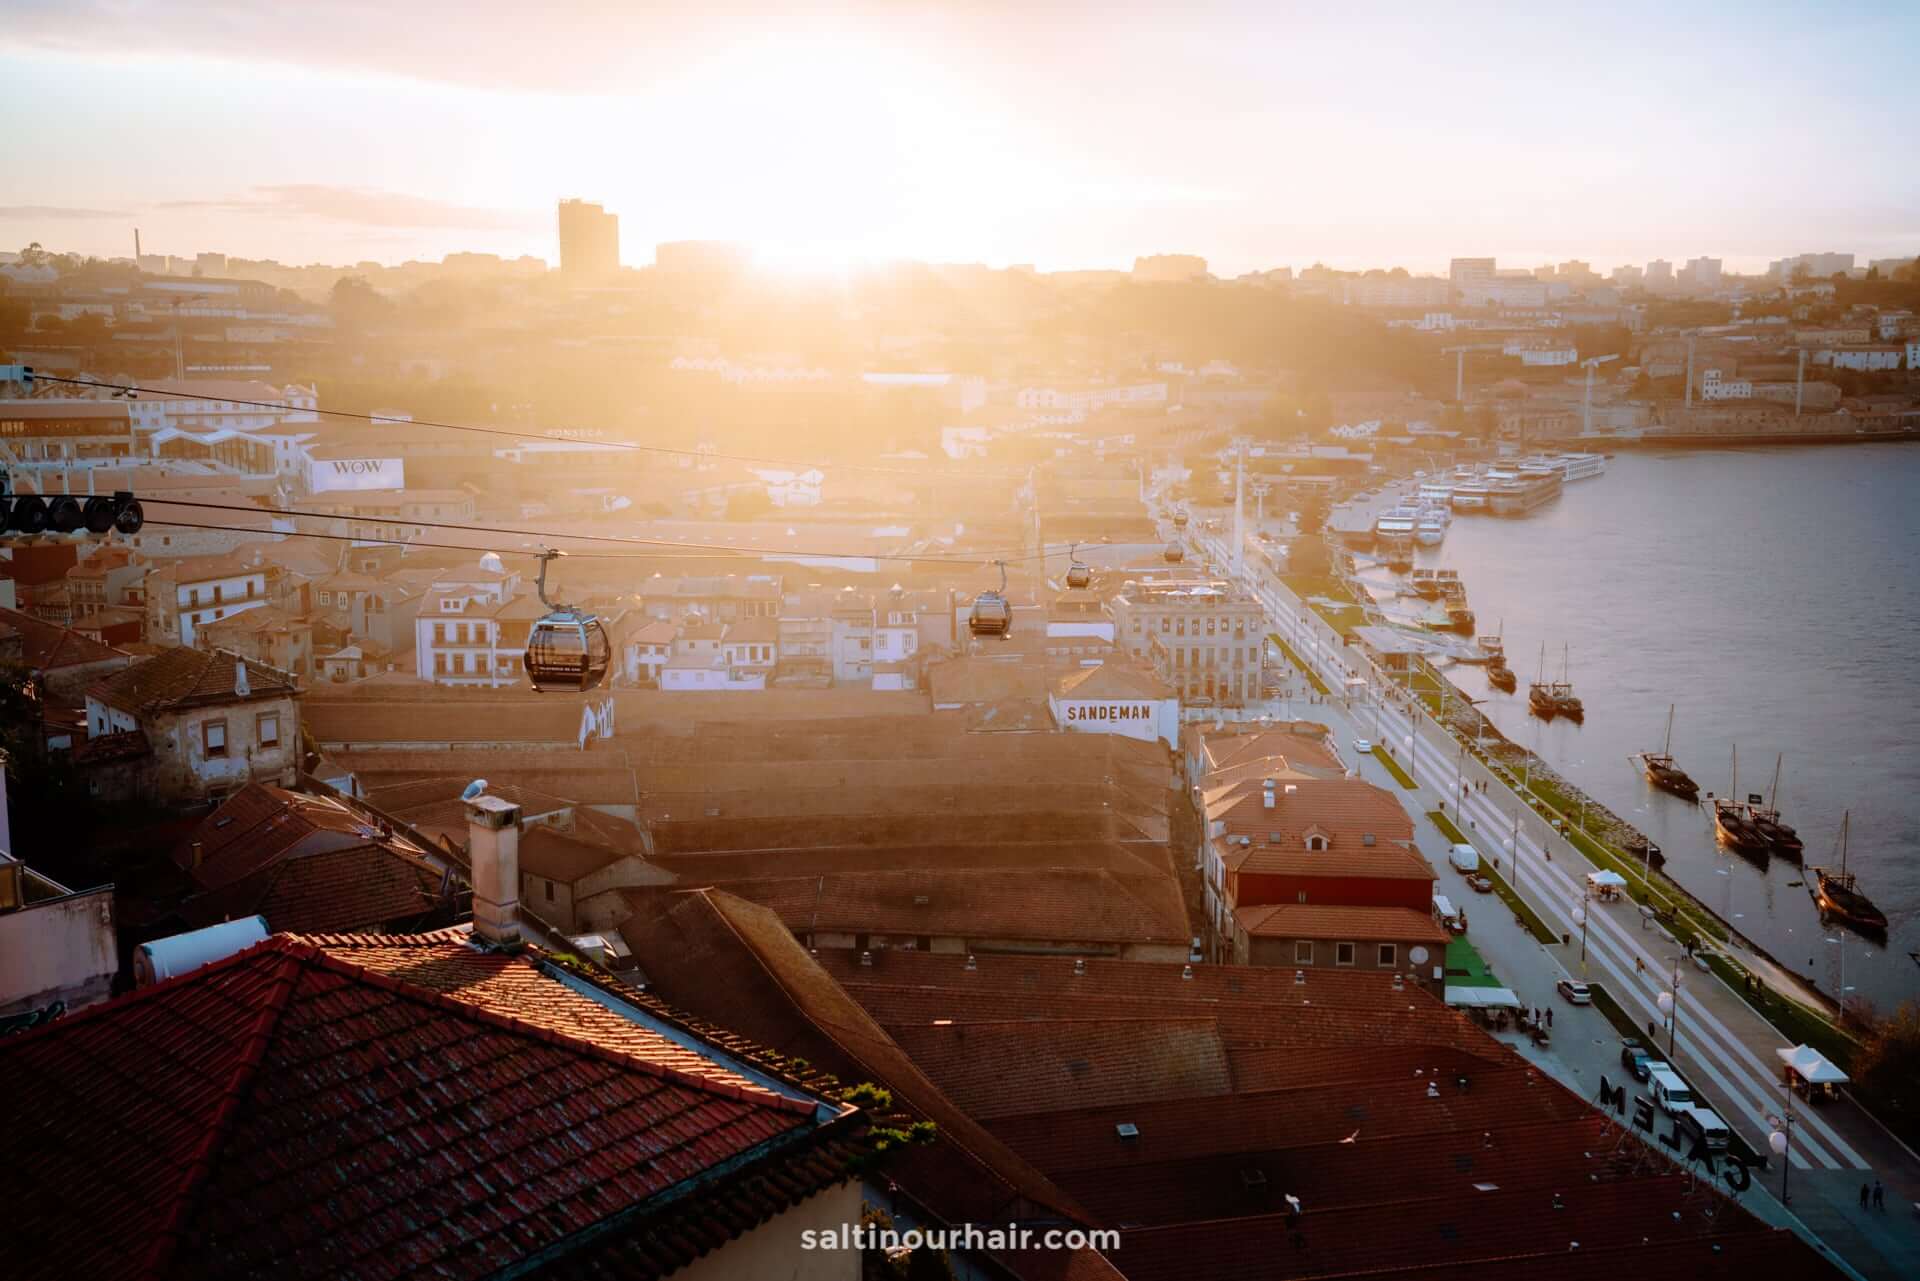 stedentrip porto portugal